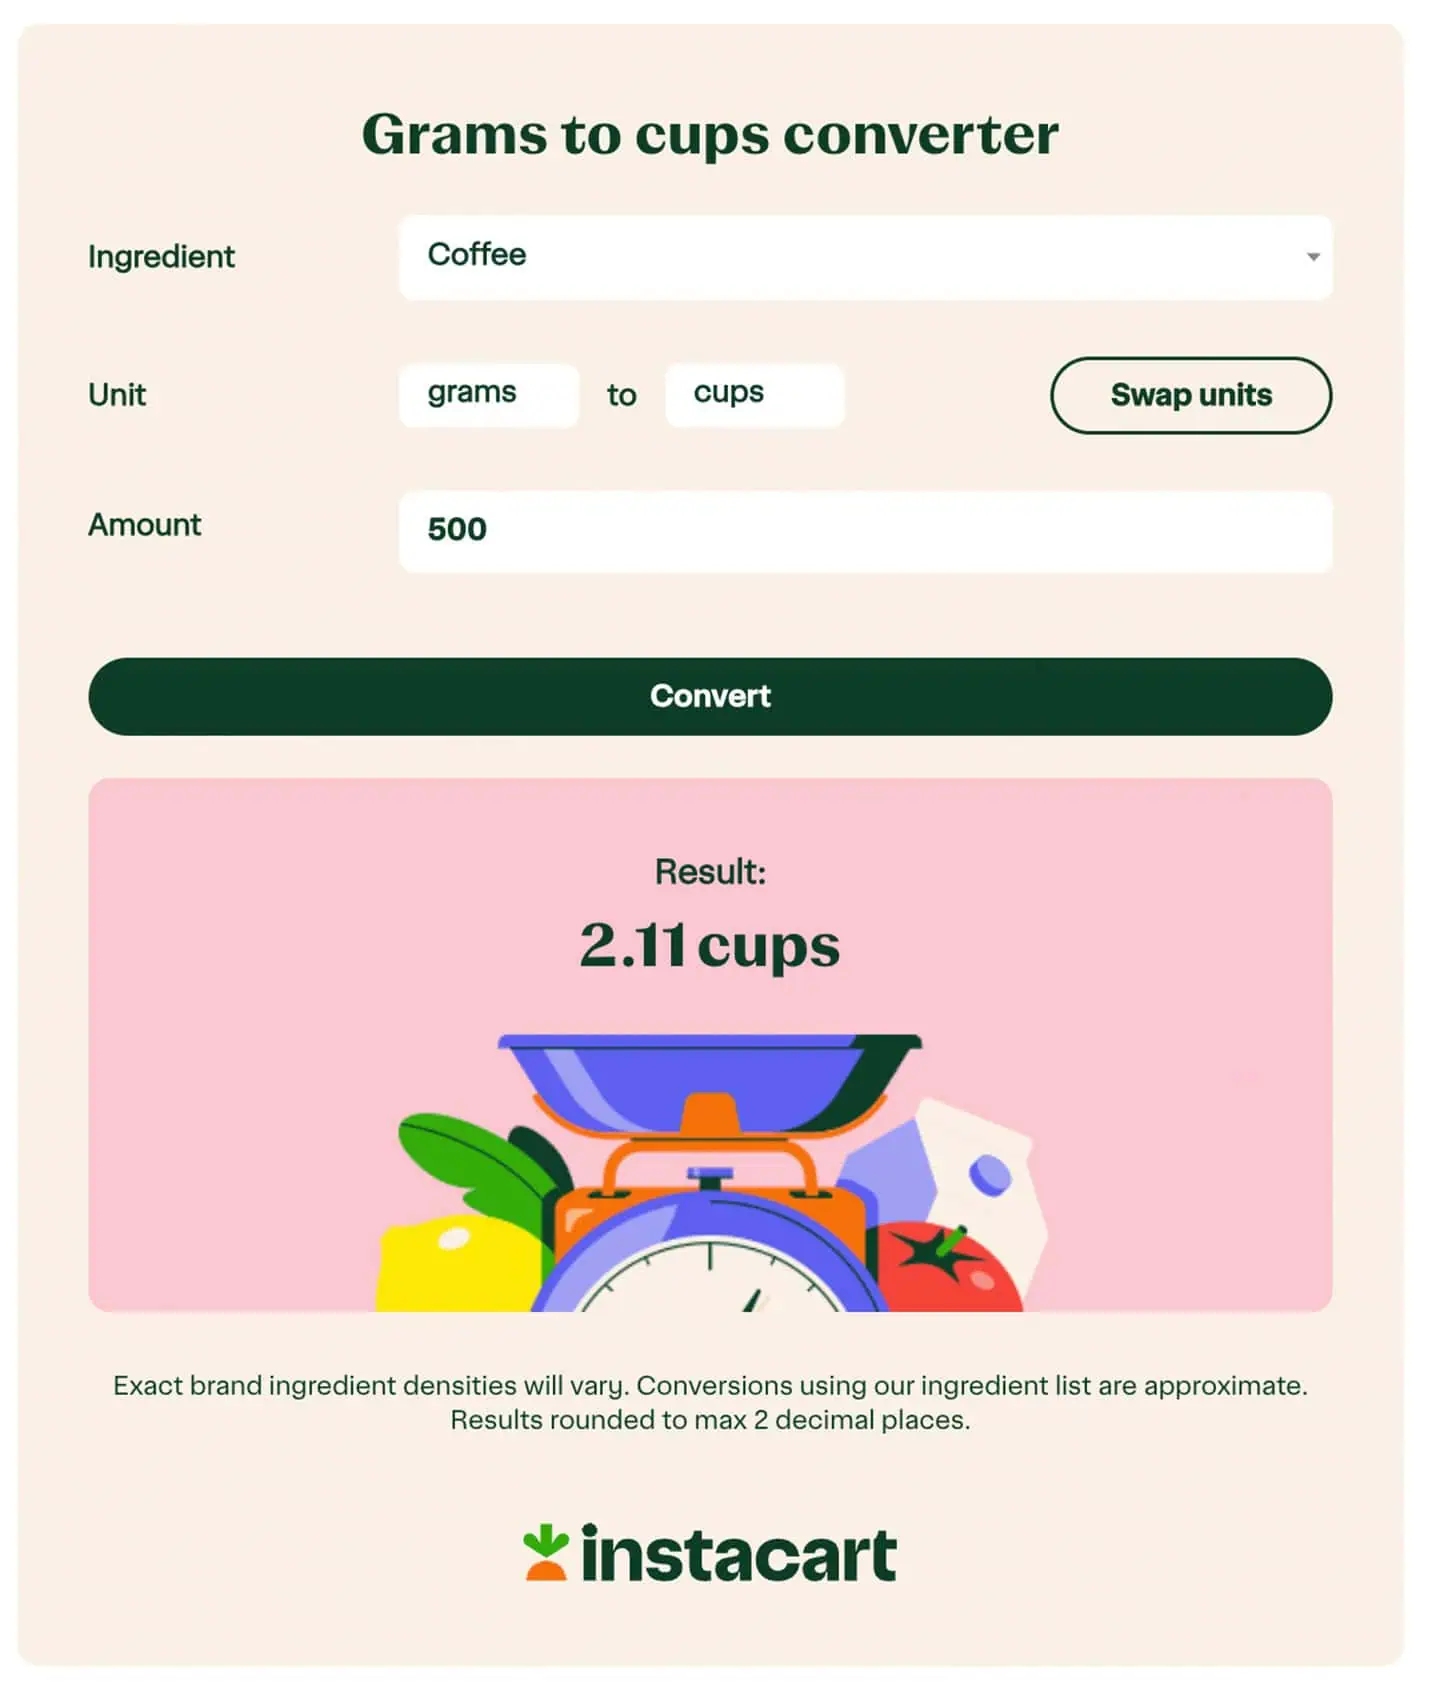 Screen shot showing interactive website example from Instacart